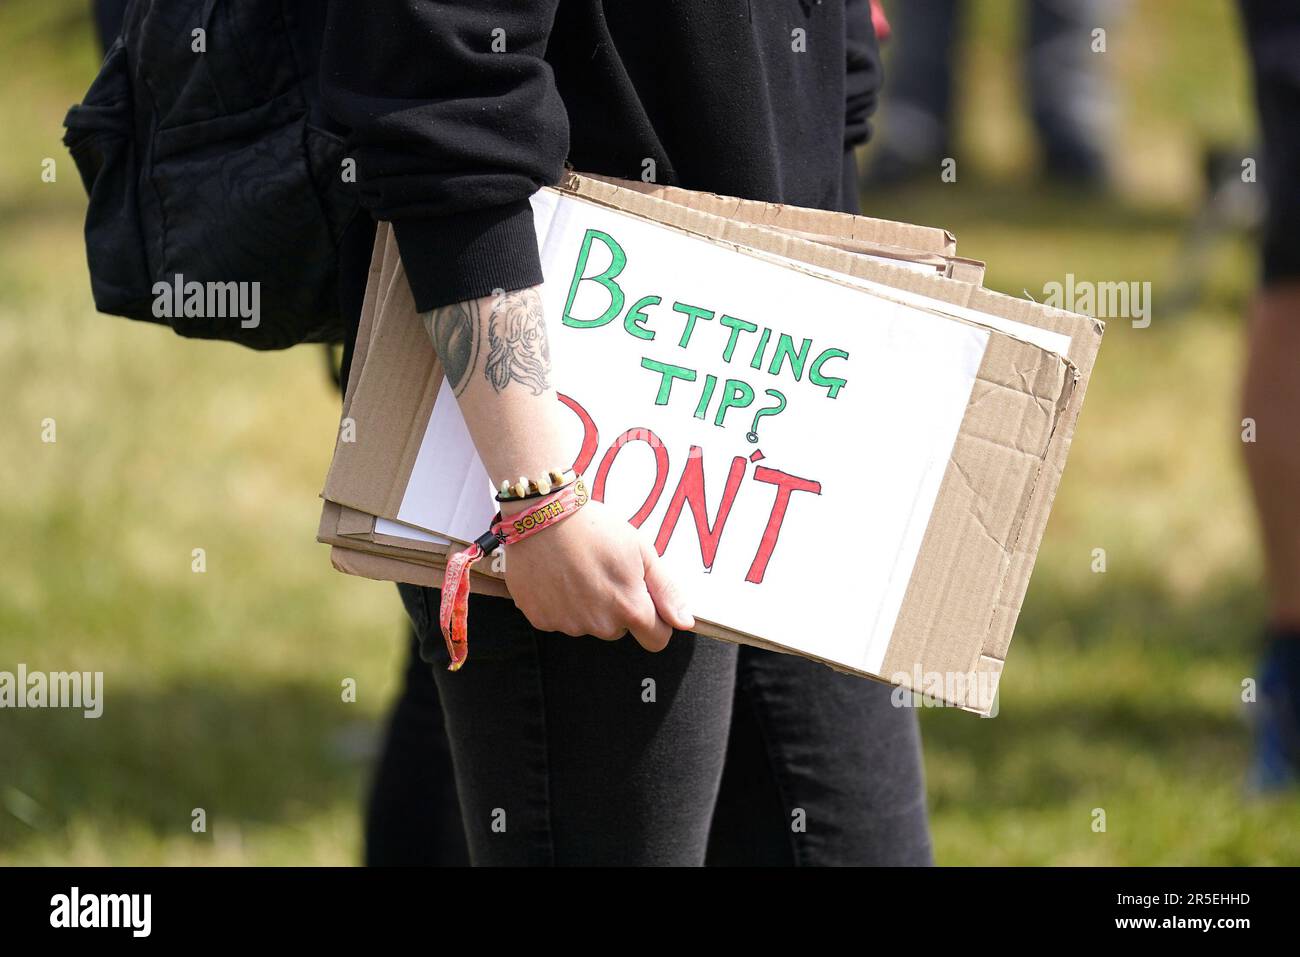 Ein Mitglied der Tierschutzorganisation Animal Rising hält ein Schild, nachdem ihnen vom Jockey Club ein Platz zugewiesen wurde, in der Nähe des Eingangs der Rennbahn, um während des Derby Festivals auf der Epsom Downs Rennbahn, Epsom, zu demonstrieren. Foto: Samstag, 3. Juni 2023. Stockfoto